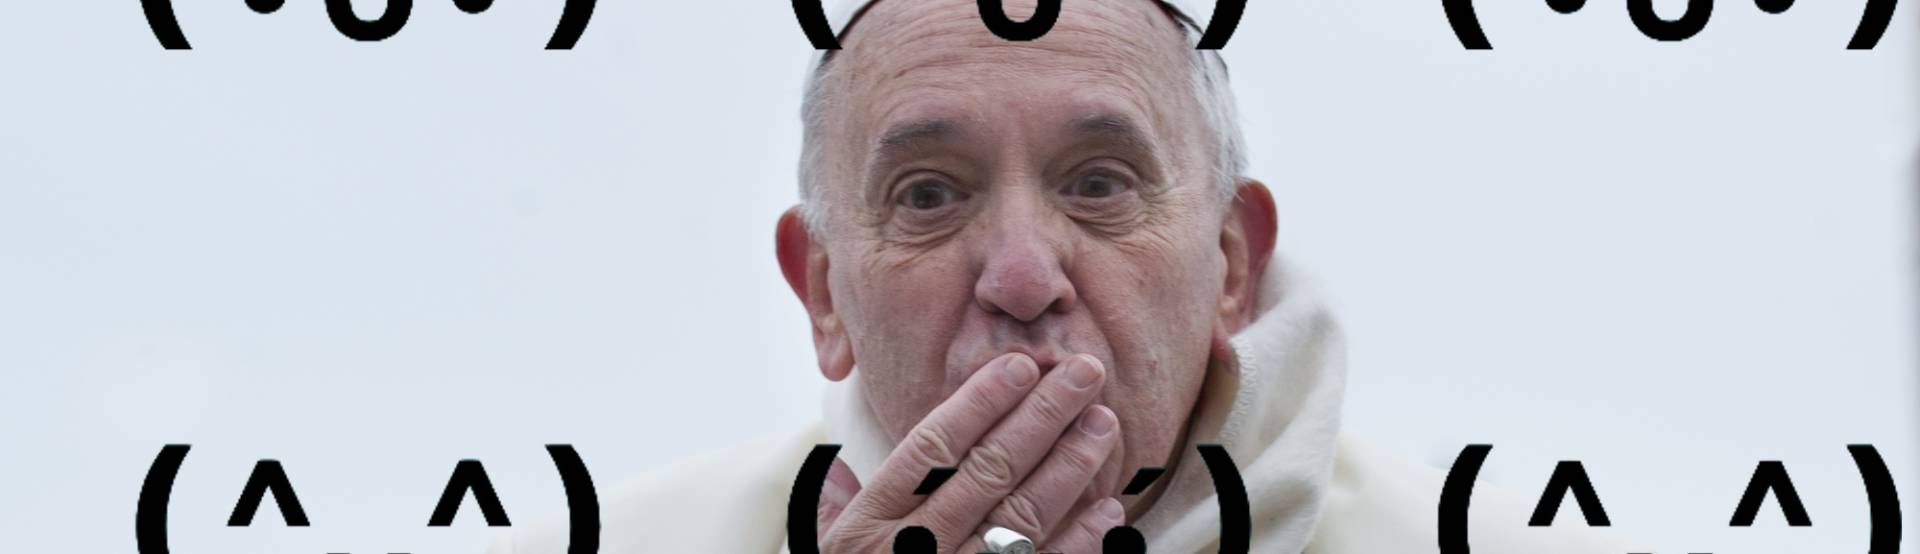 Papa Francesco: “Programmate con il Papa”, incoraggia più bambini allo sviluppo software